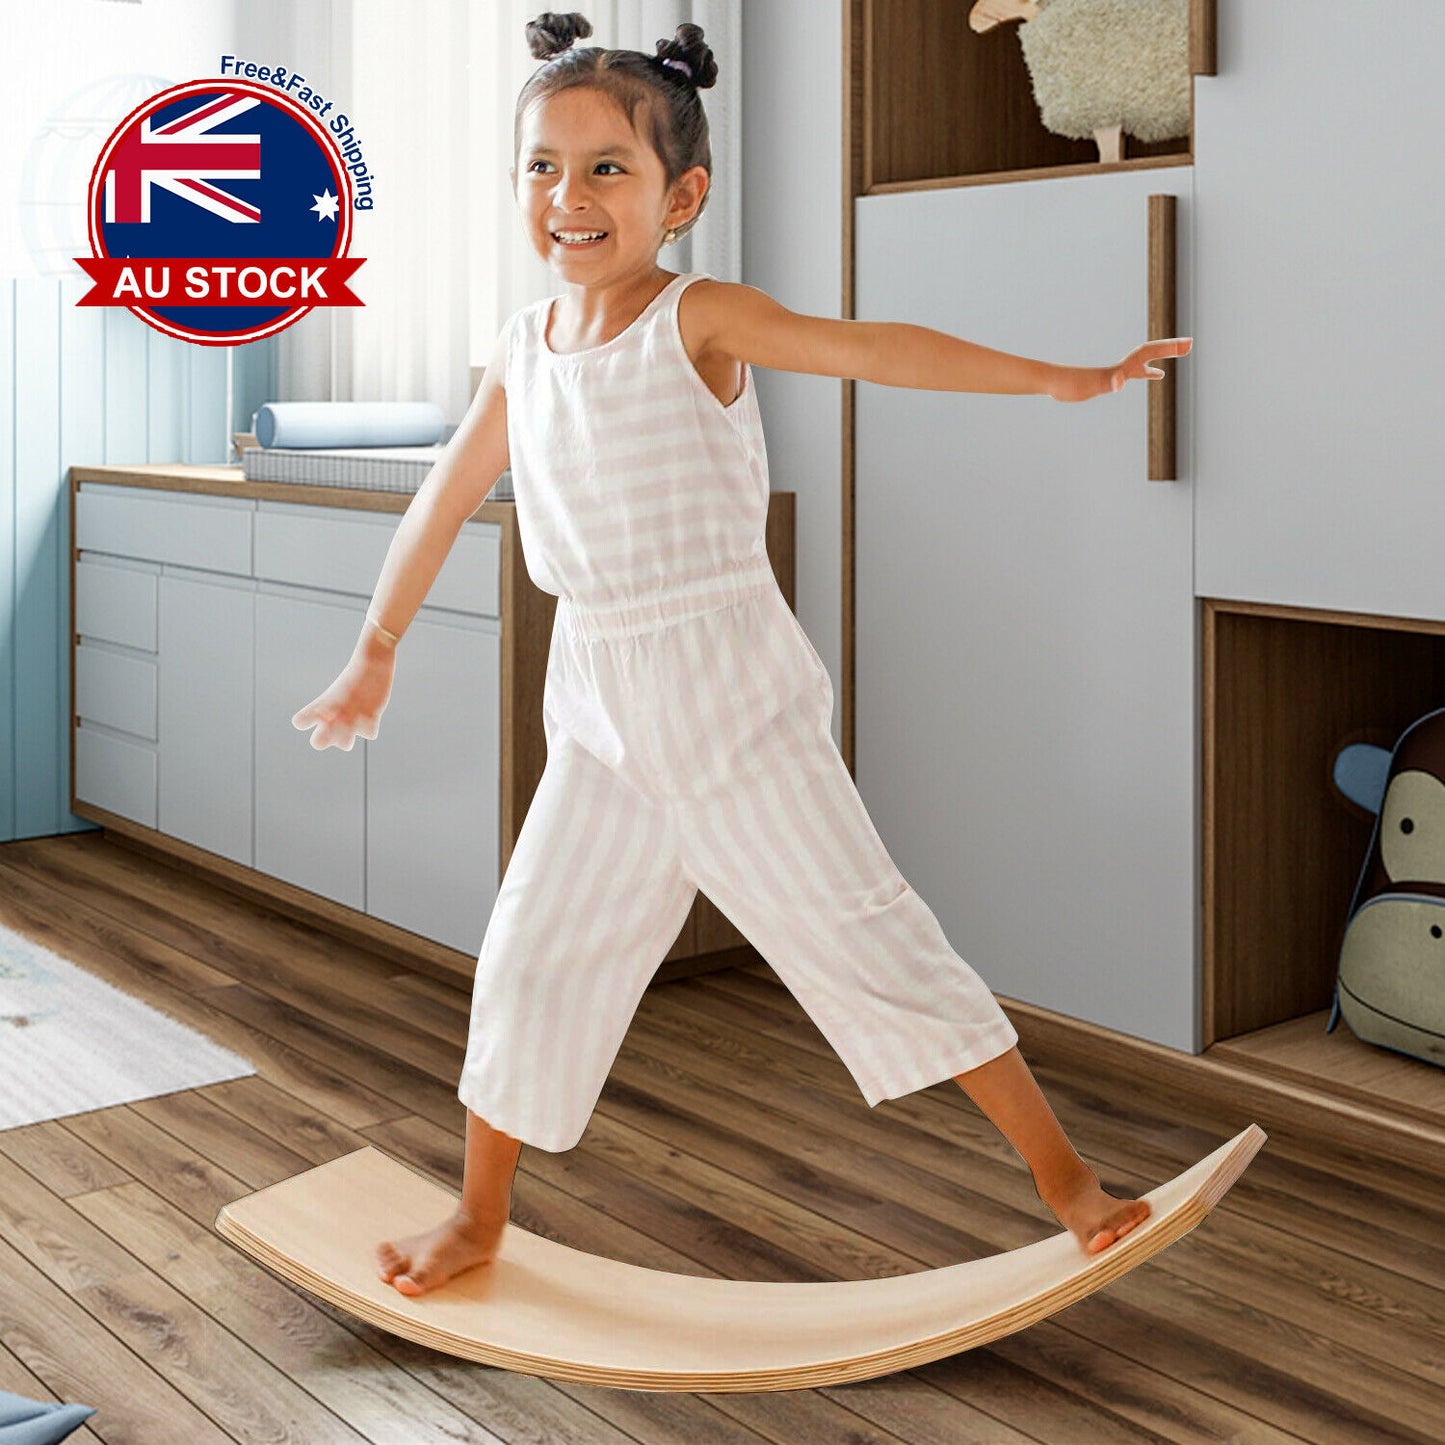 Wooden Balance Board; Rocker Board; Kids Balance Board Toy